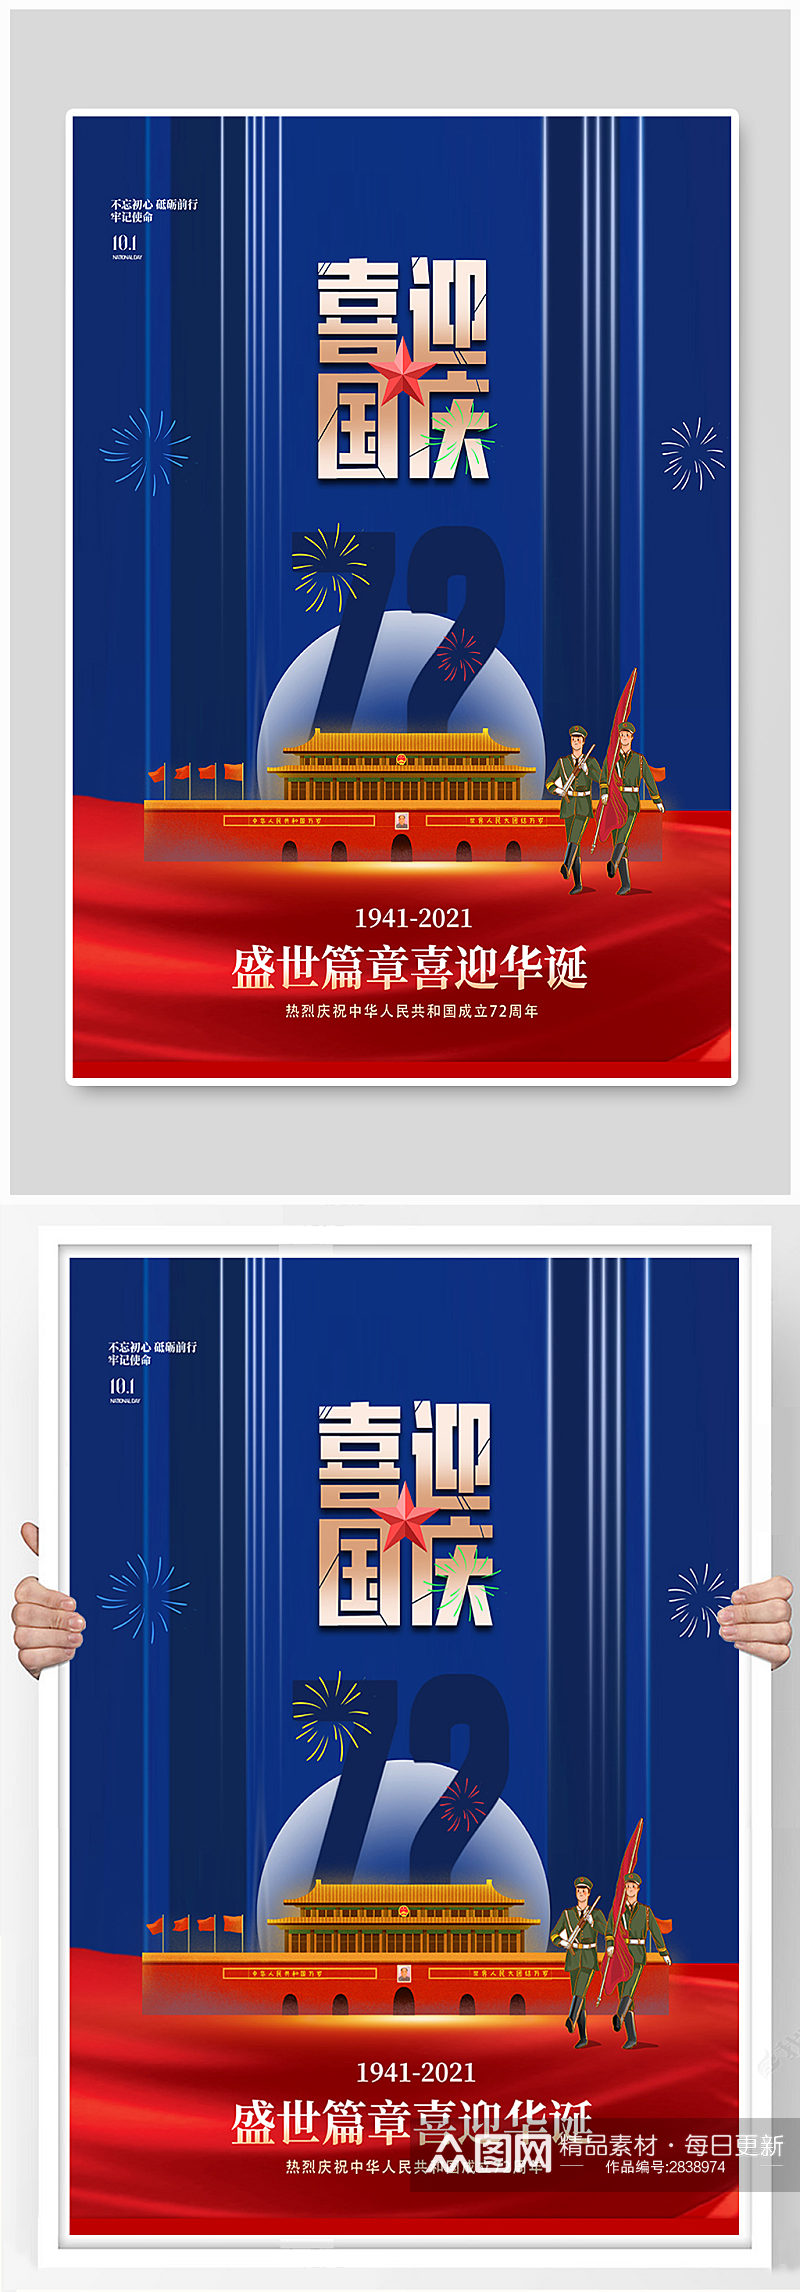 红蓝拼色国庆节销宣传海报素材